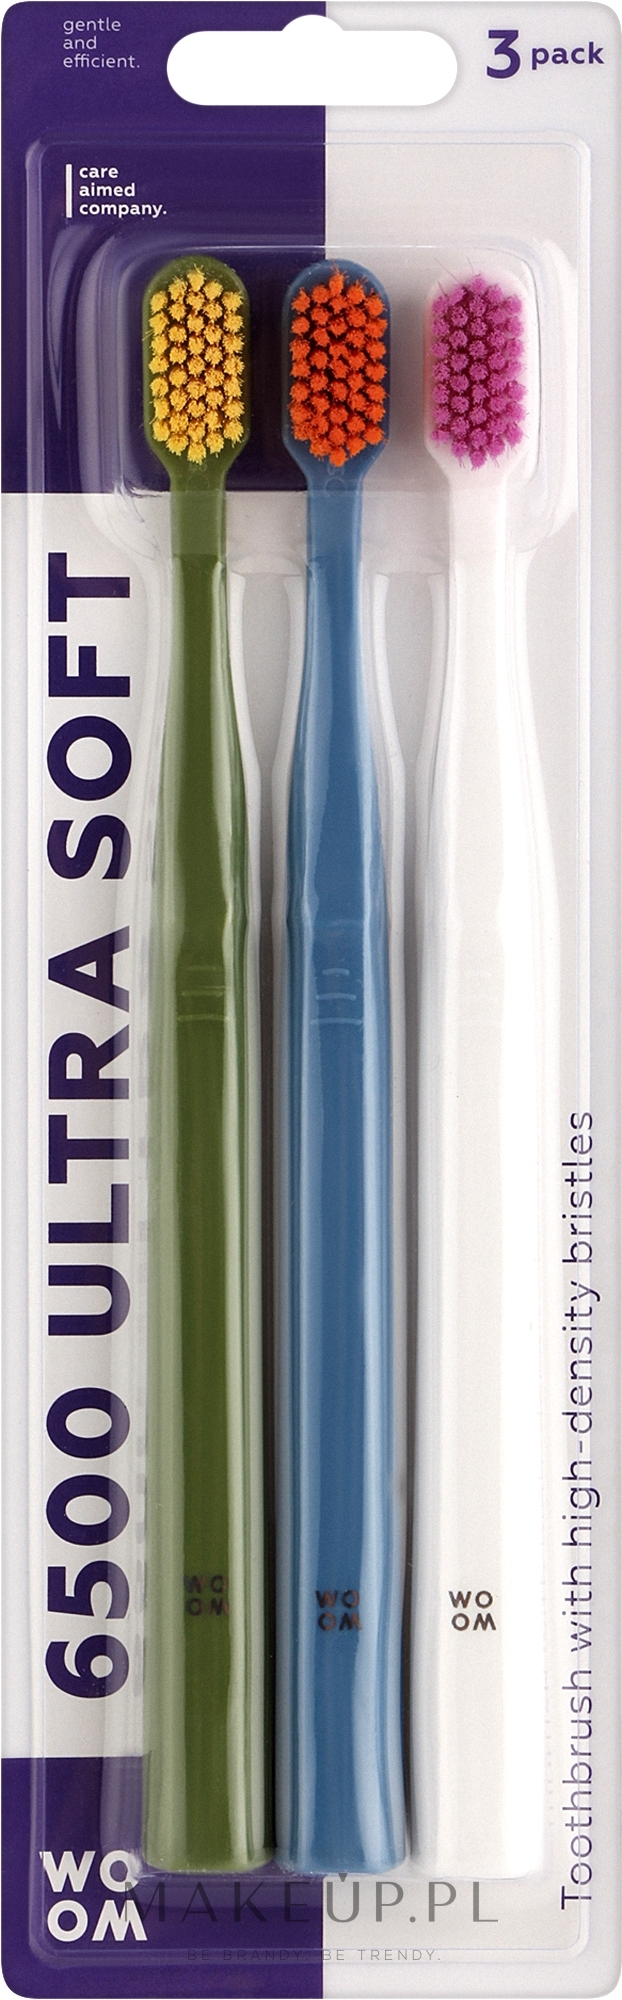 Zestaw szczoteczek do zębów, ultramiękkie, zielona, niebieska, biała - Woom 6500 Ultra Soft Toothbrush — Zdjęcie 3 szt.